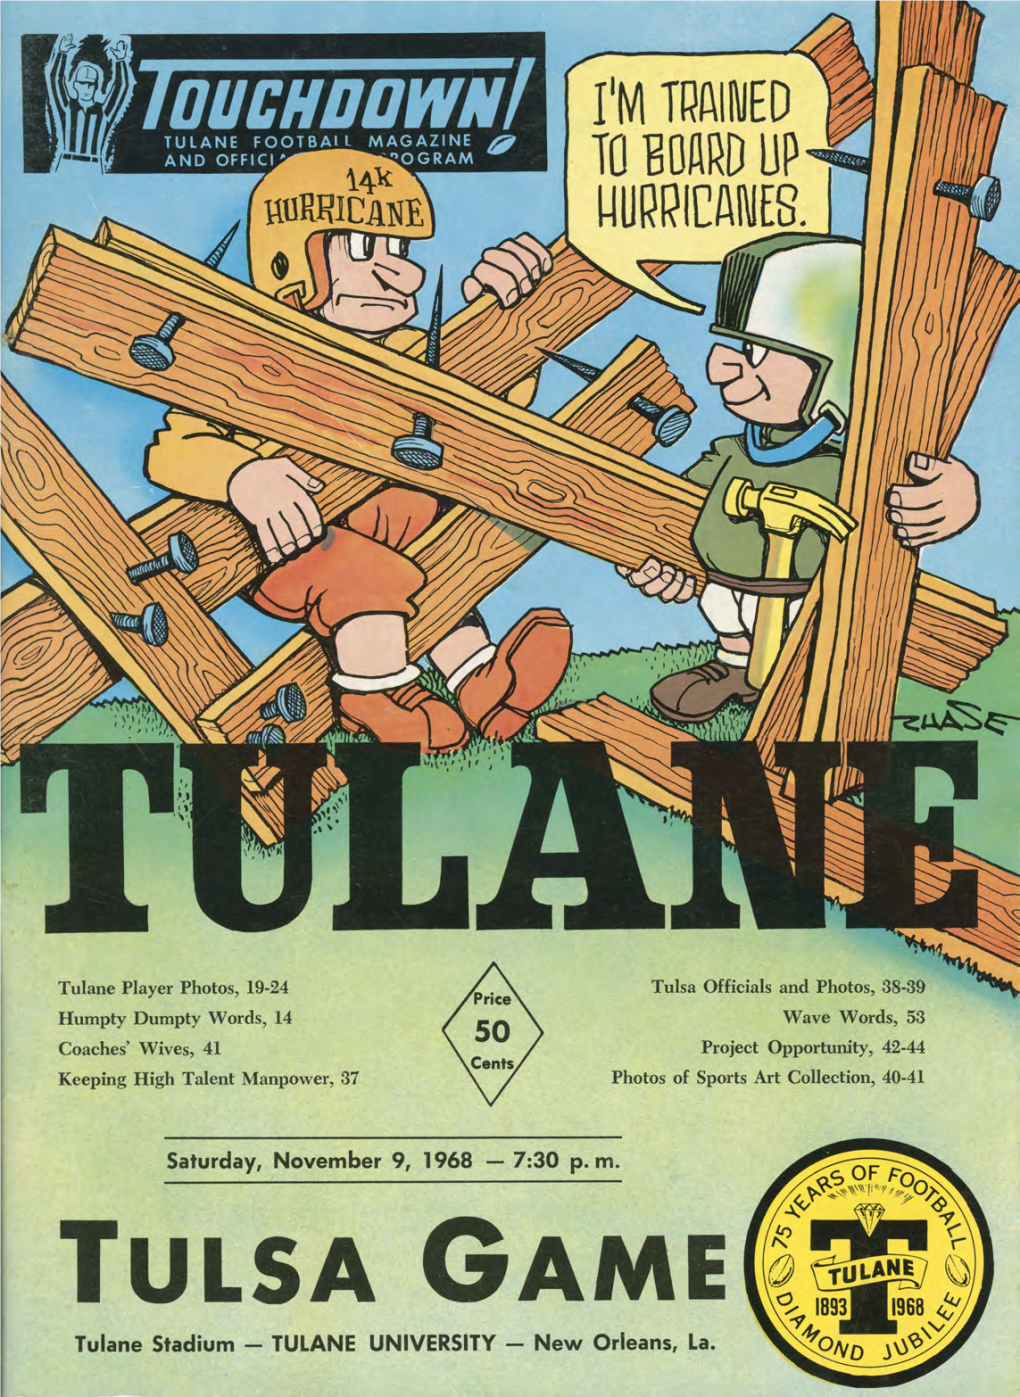 TULSA GAME Tulane Stadium - TULANE UNIVERSITY - New Orleans, La